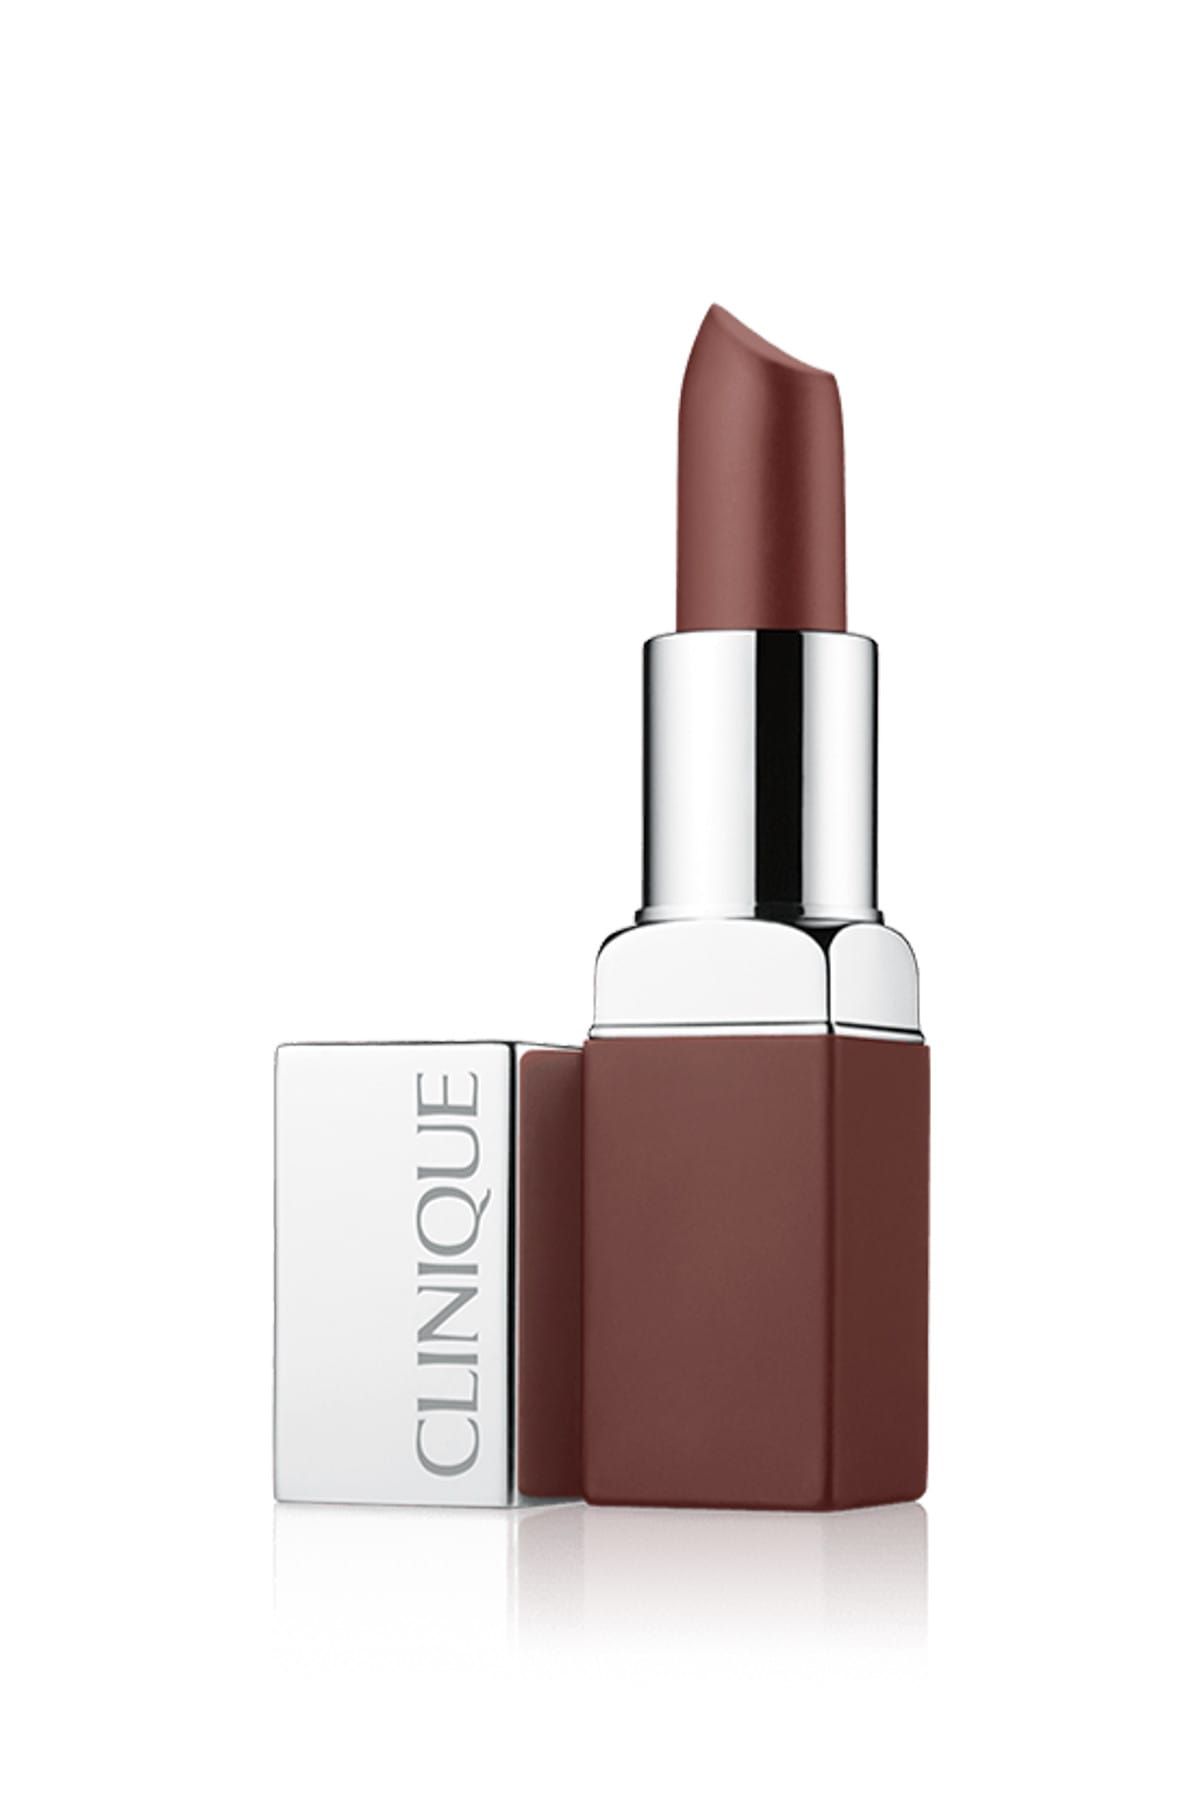 Clinique Mat Ruj - Pop Matte Lip Colour Clove Pop  020714852573